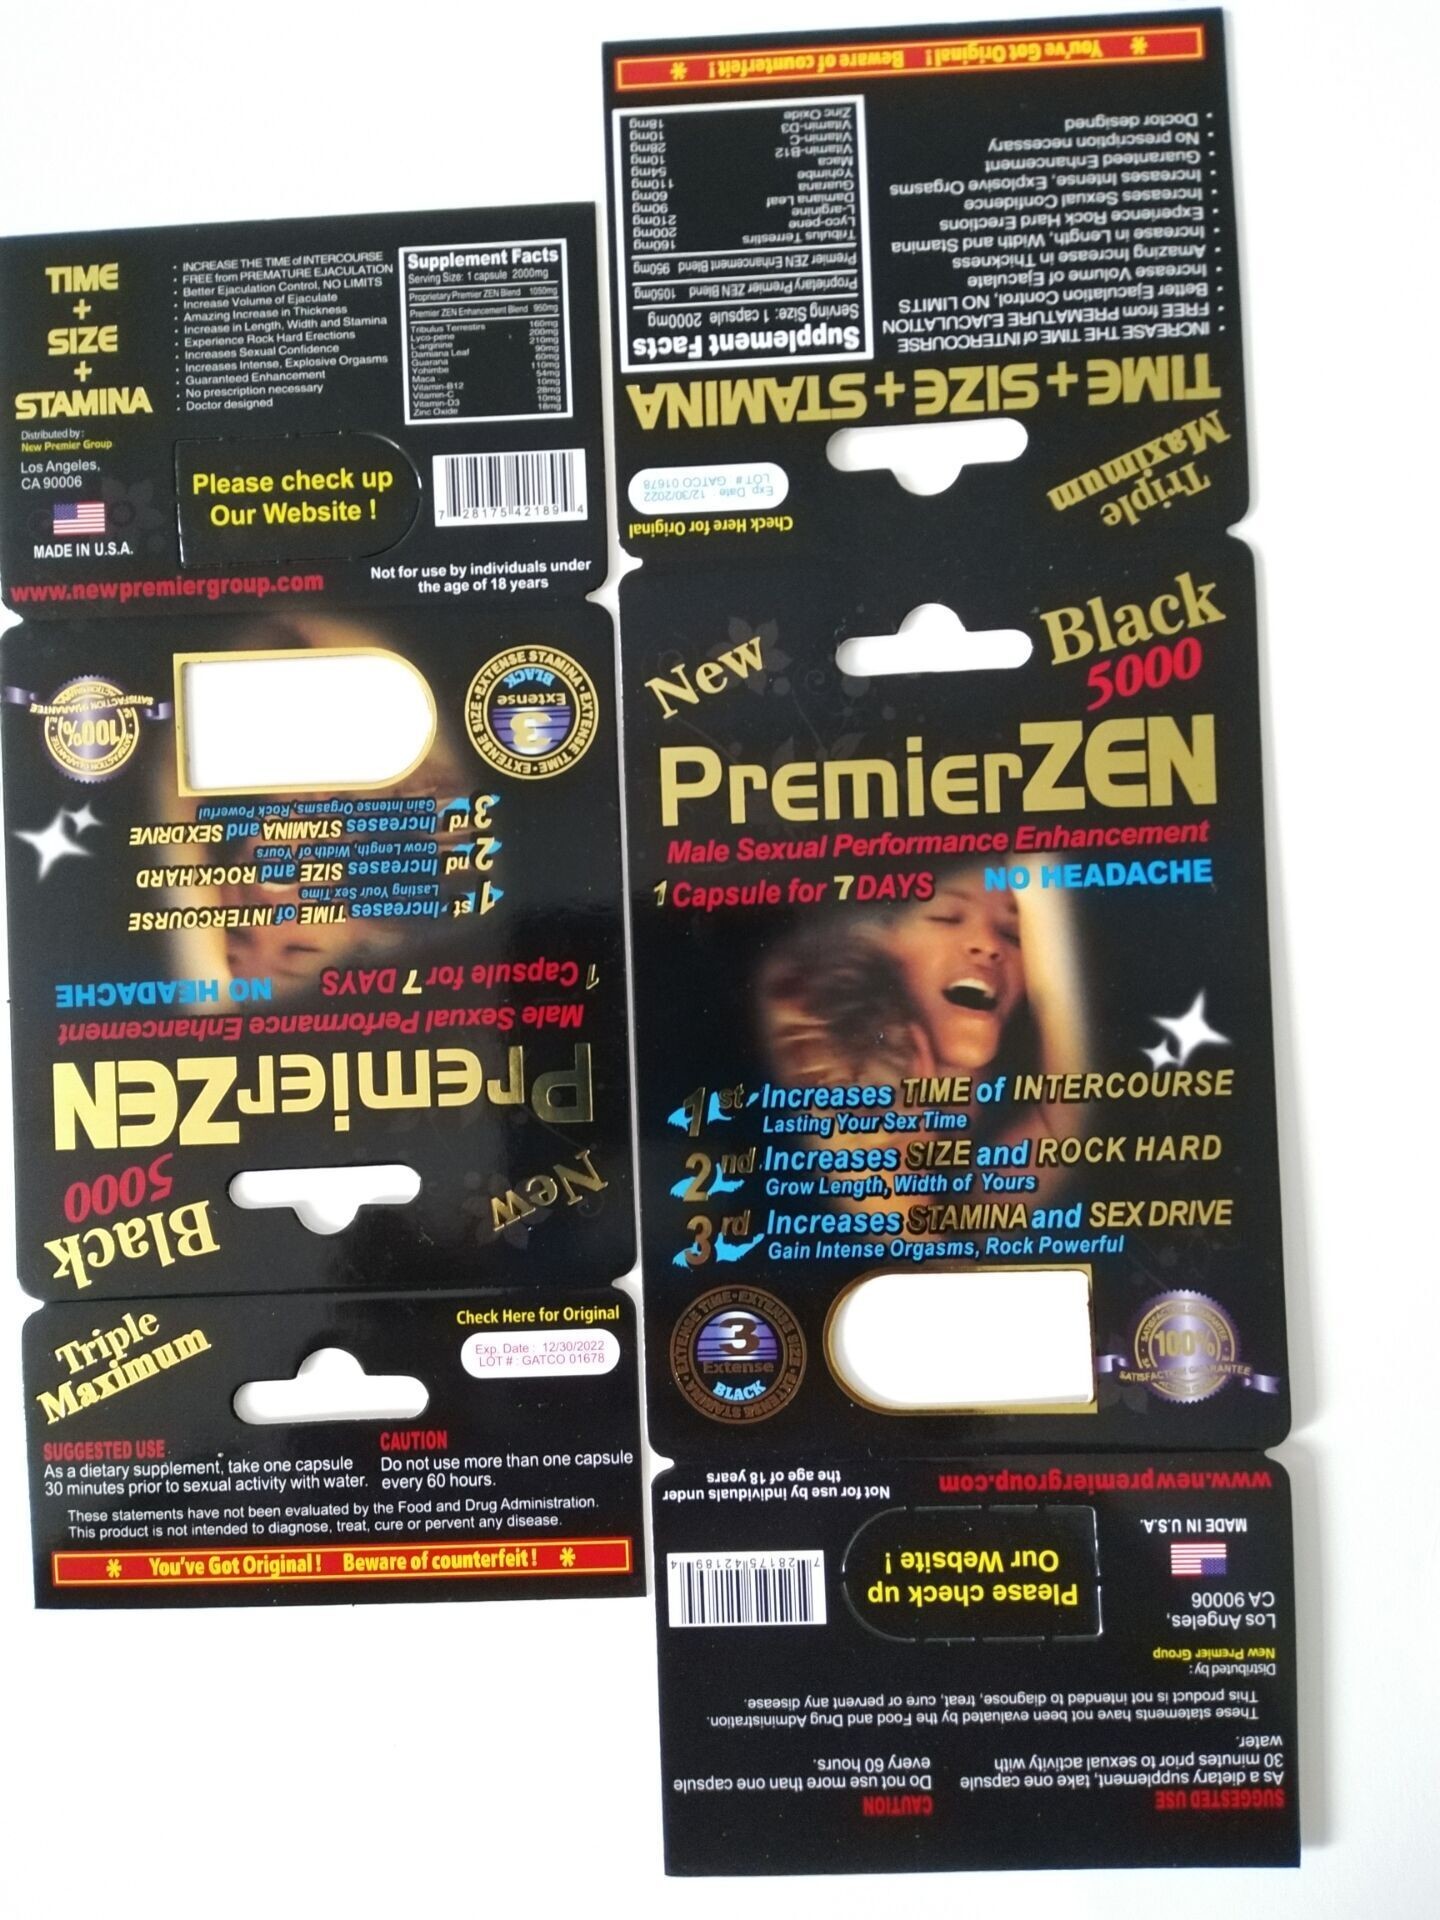 Ucuz Premier Premier zen erkek cinsel performans geliştirme Yeni tasarım sert sert rox hap paketi şişe ve kart